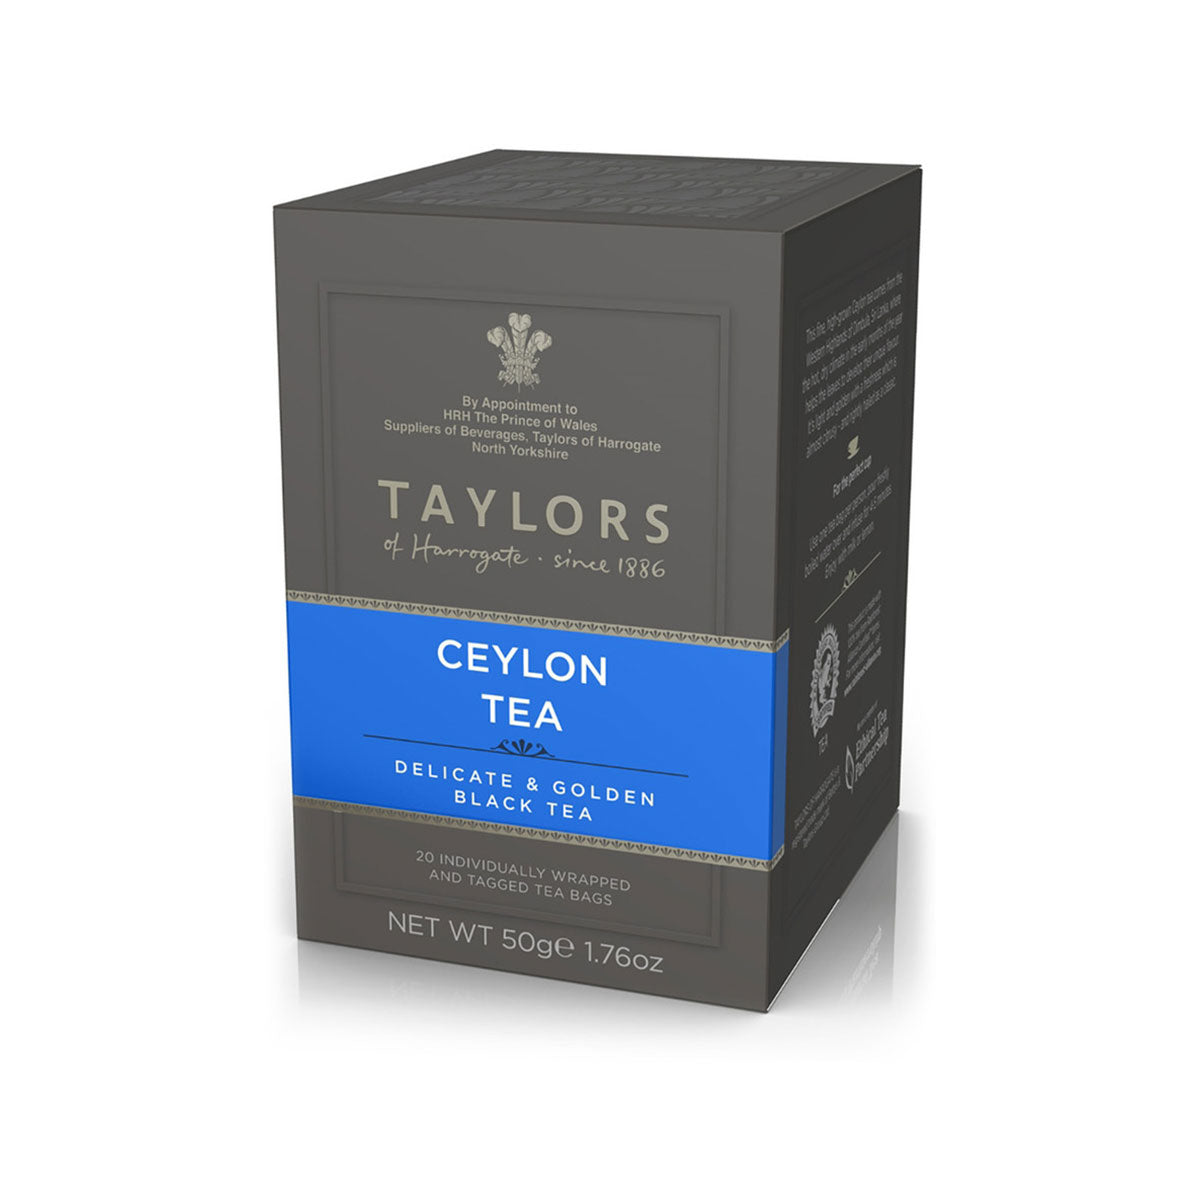 Taylors Ceylon Tea